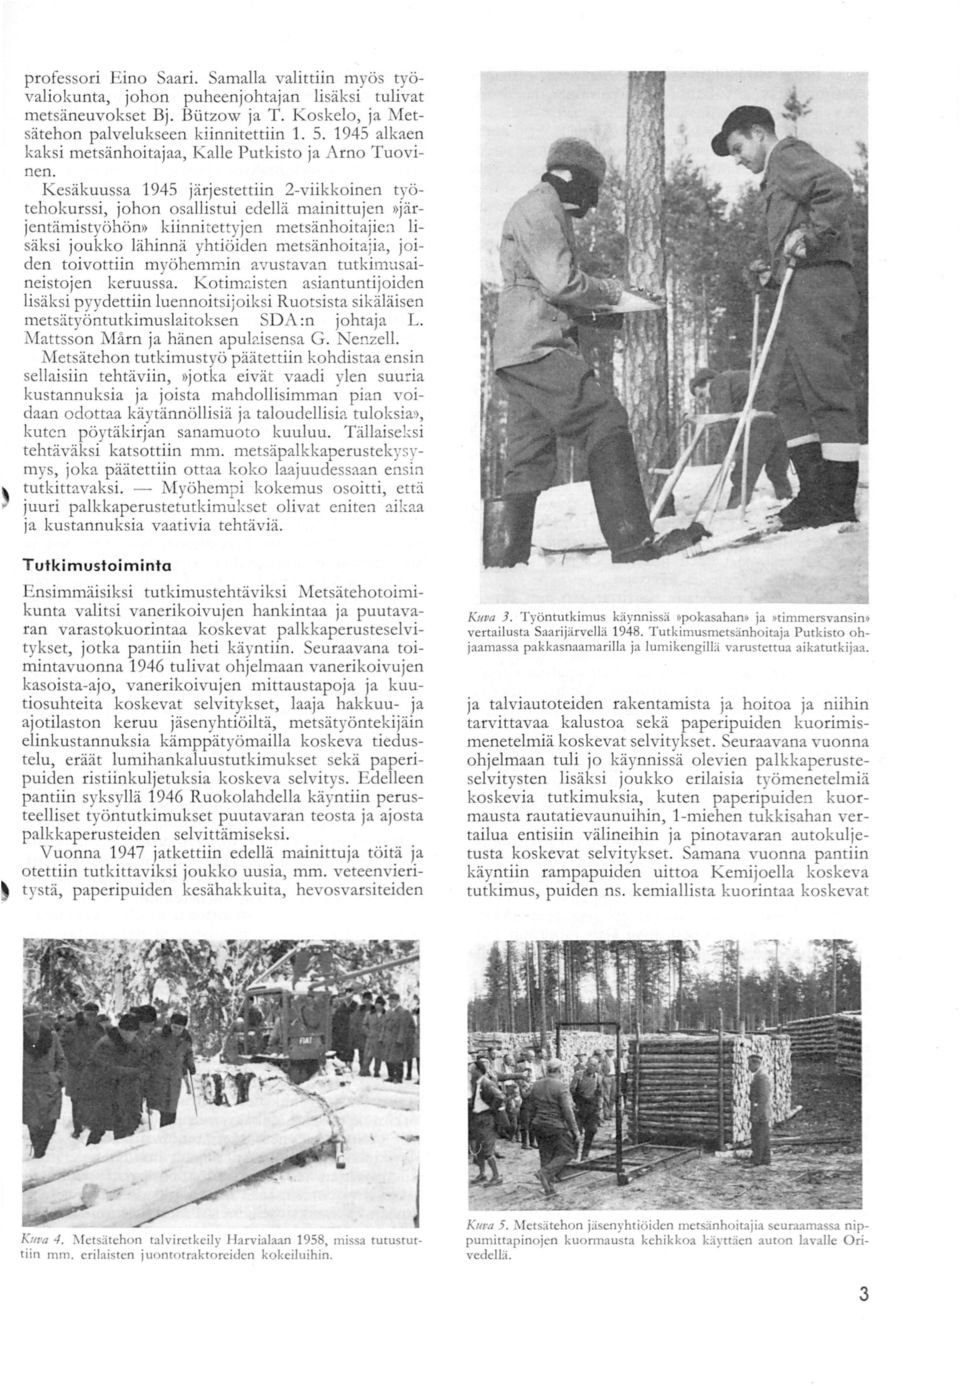 Kesäkuussa 1945 järjestettiin 2-viikkoinen työtehokurssi, johon osallistui edellä mainittujen )>järjentämistyöhöm> kiinnitettyjen metsänhoitajien lisäksi joukko lähinnä yhtiöiden metsänhoitajia,